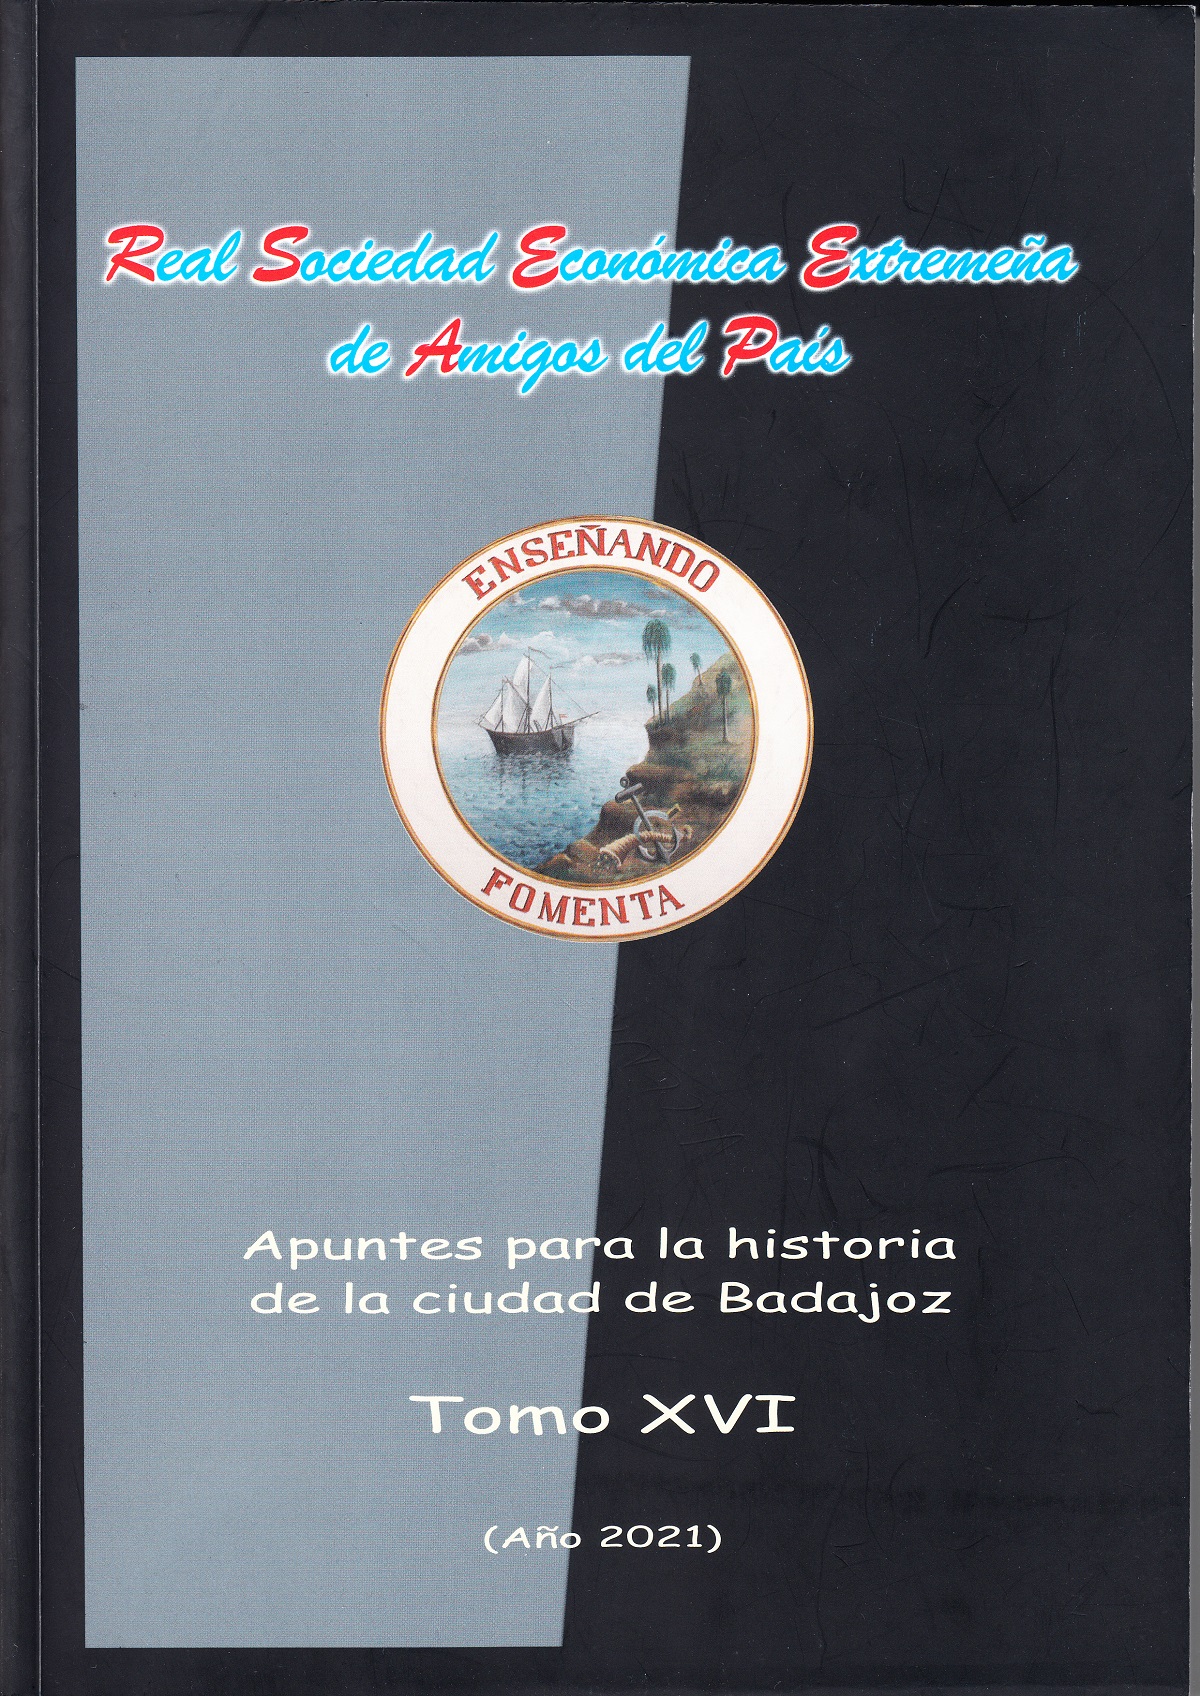 Imagen de portada del libro Apuntes para la historia de la ciudad de Badajoz